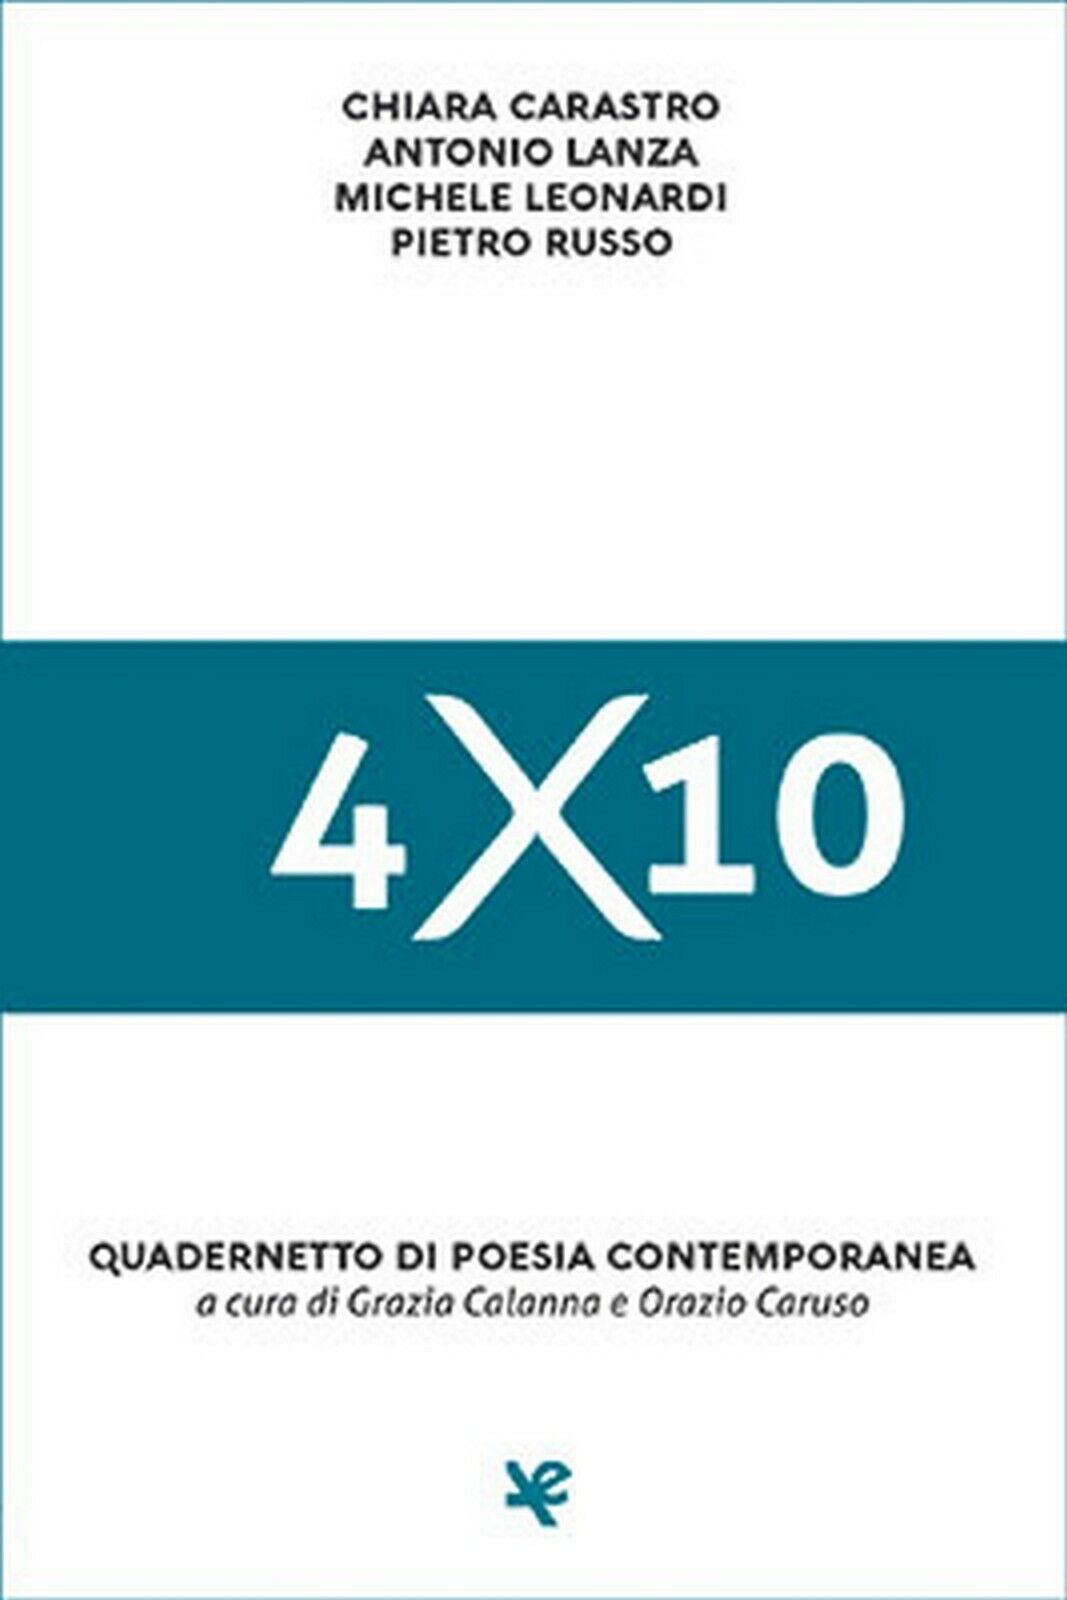 4?10 Quadernetto di poesia contemporanea  di Chiara Carastro,  Algra Editore